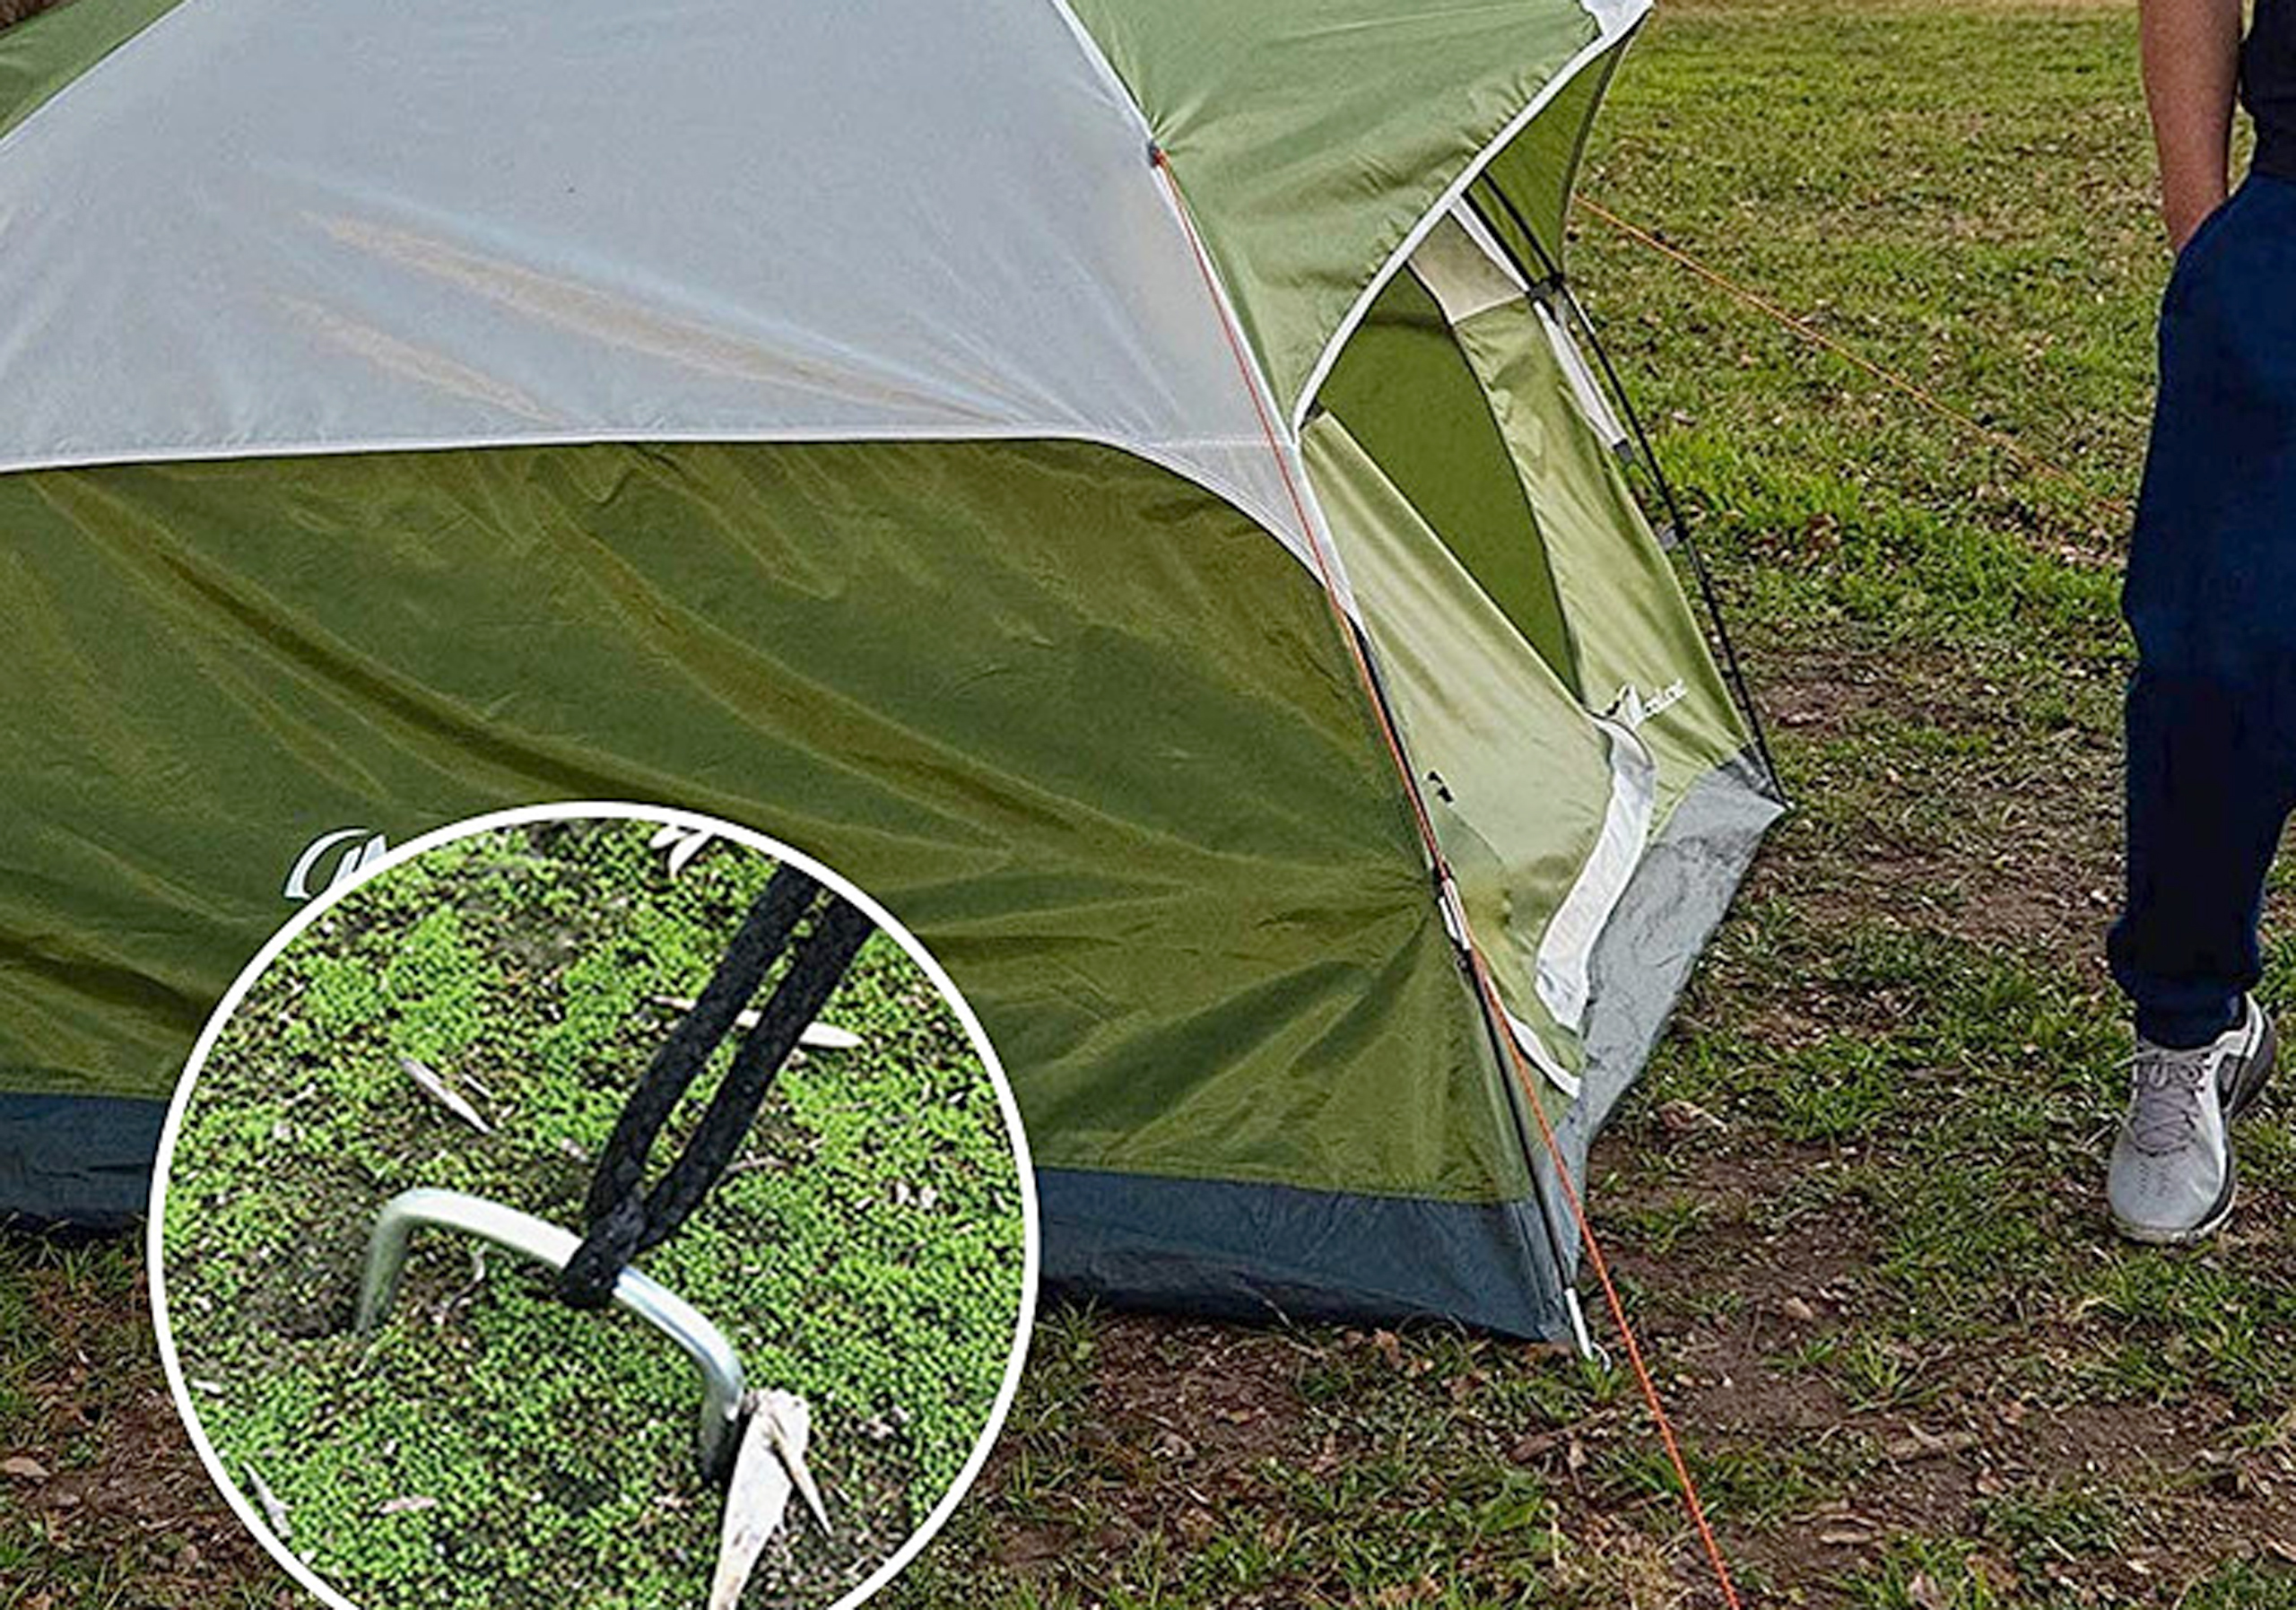 Metalowy kształt ogrowy ogródek sztuczny trawa trawa ziemia gwoździ paznokcie gwoździą cień shad netto namiot namiot stałego kołki stawki ogrodowe